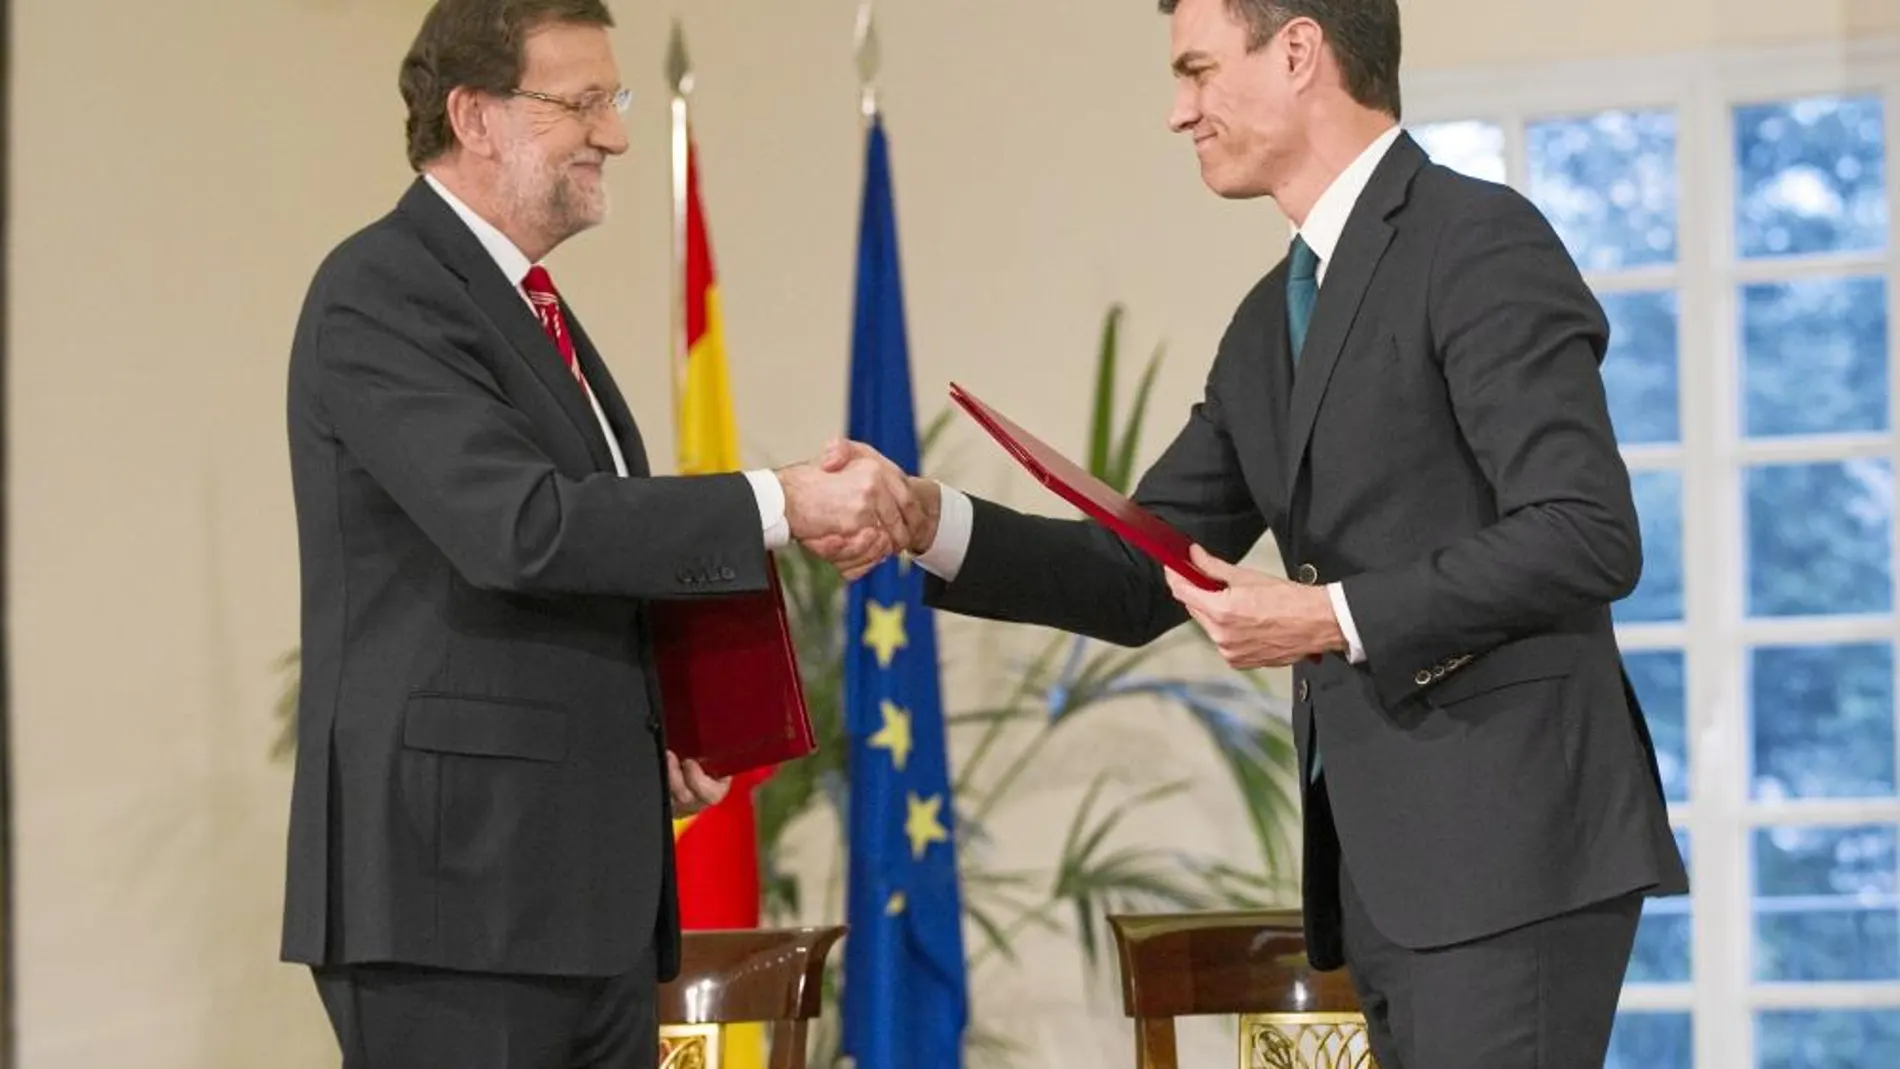 El presidente del Gobierno, Mariano Rajoy, y el líder de la oposición, Pedro Sánchez, se estrechan la mano tras rubricar el pacto antiterrorista en La Moncloa